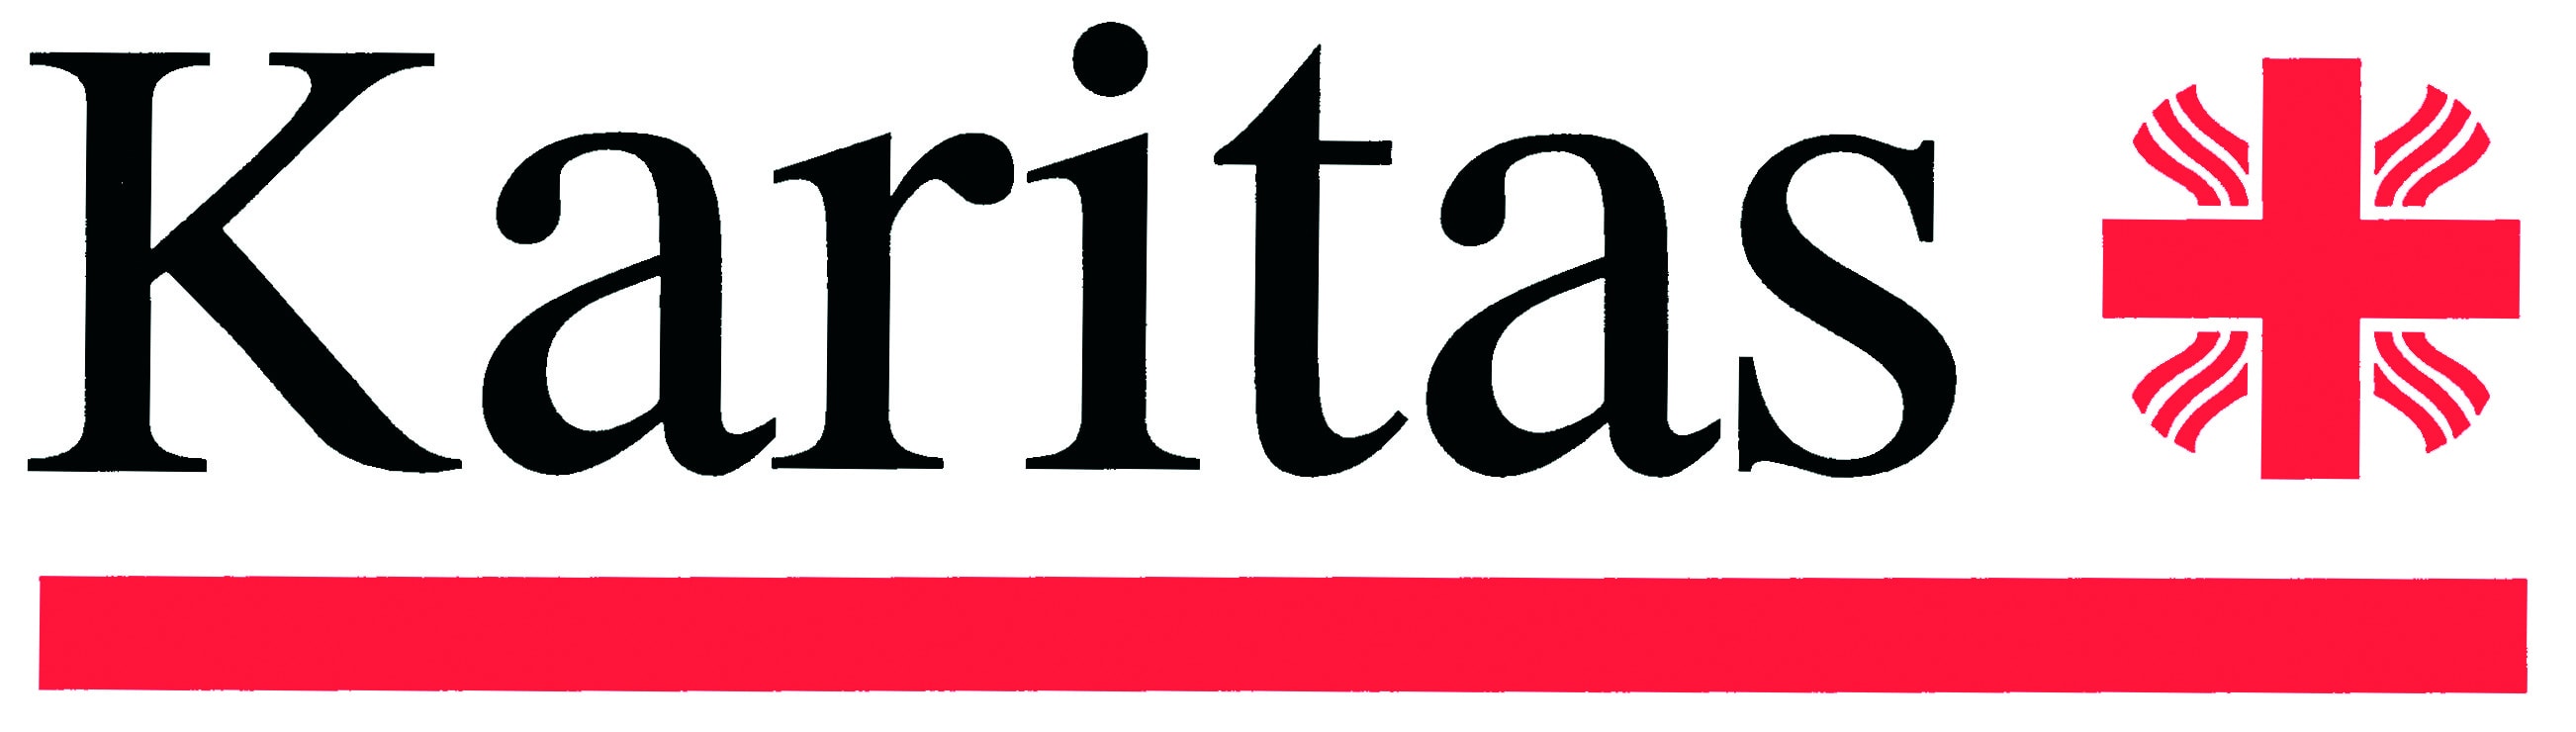 karitas_logo